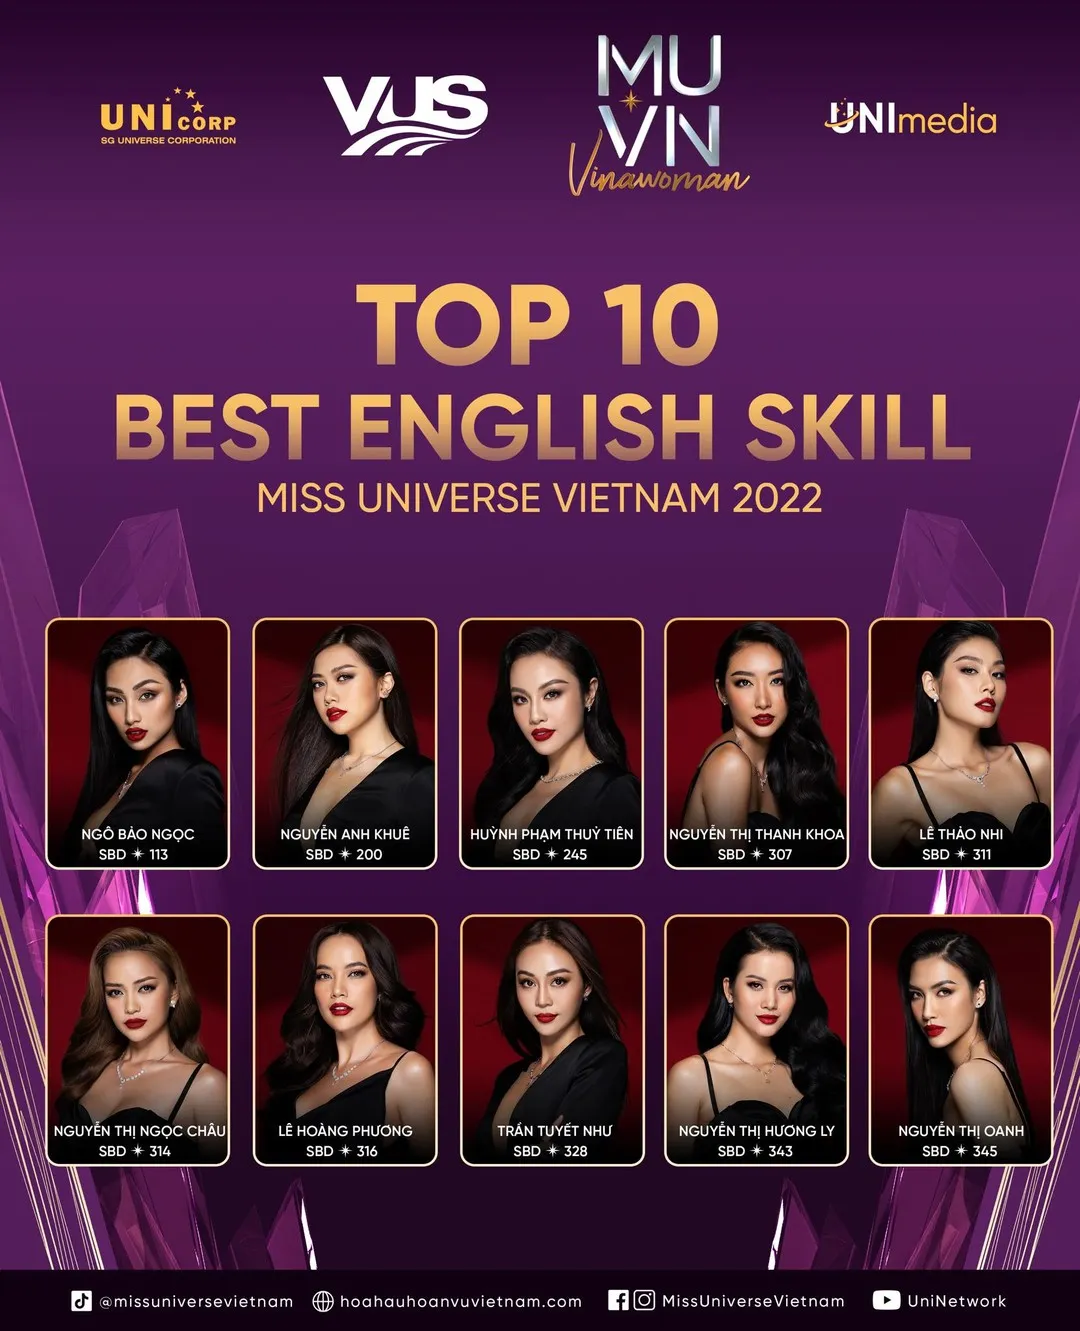 Nguyễn Thị Ngọc Châu - SBD 314 vence miss universe vietnam 2022. - Página 12 HZMxFS